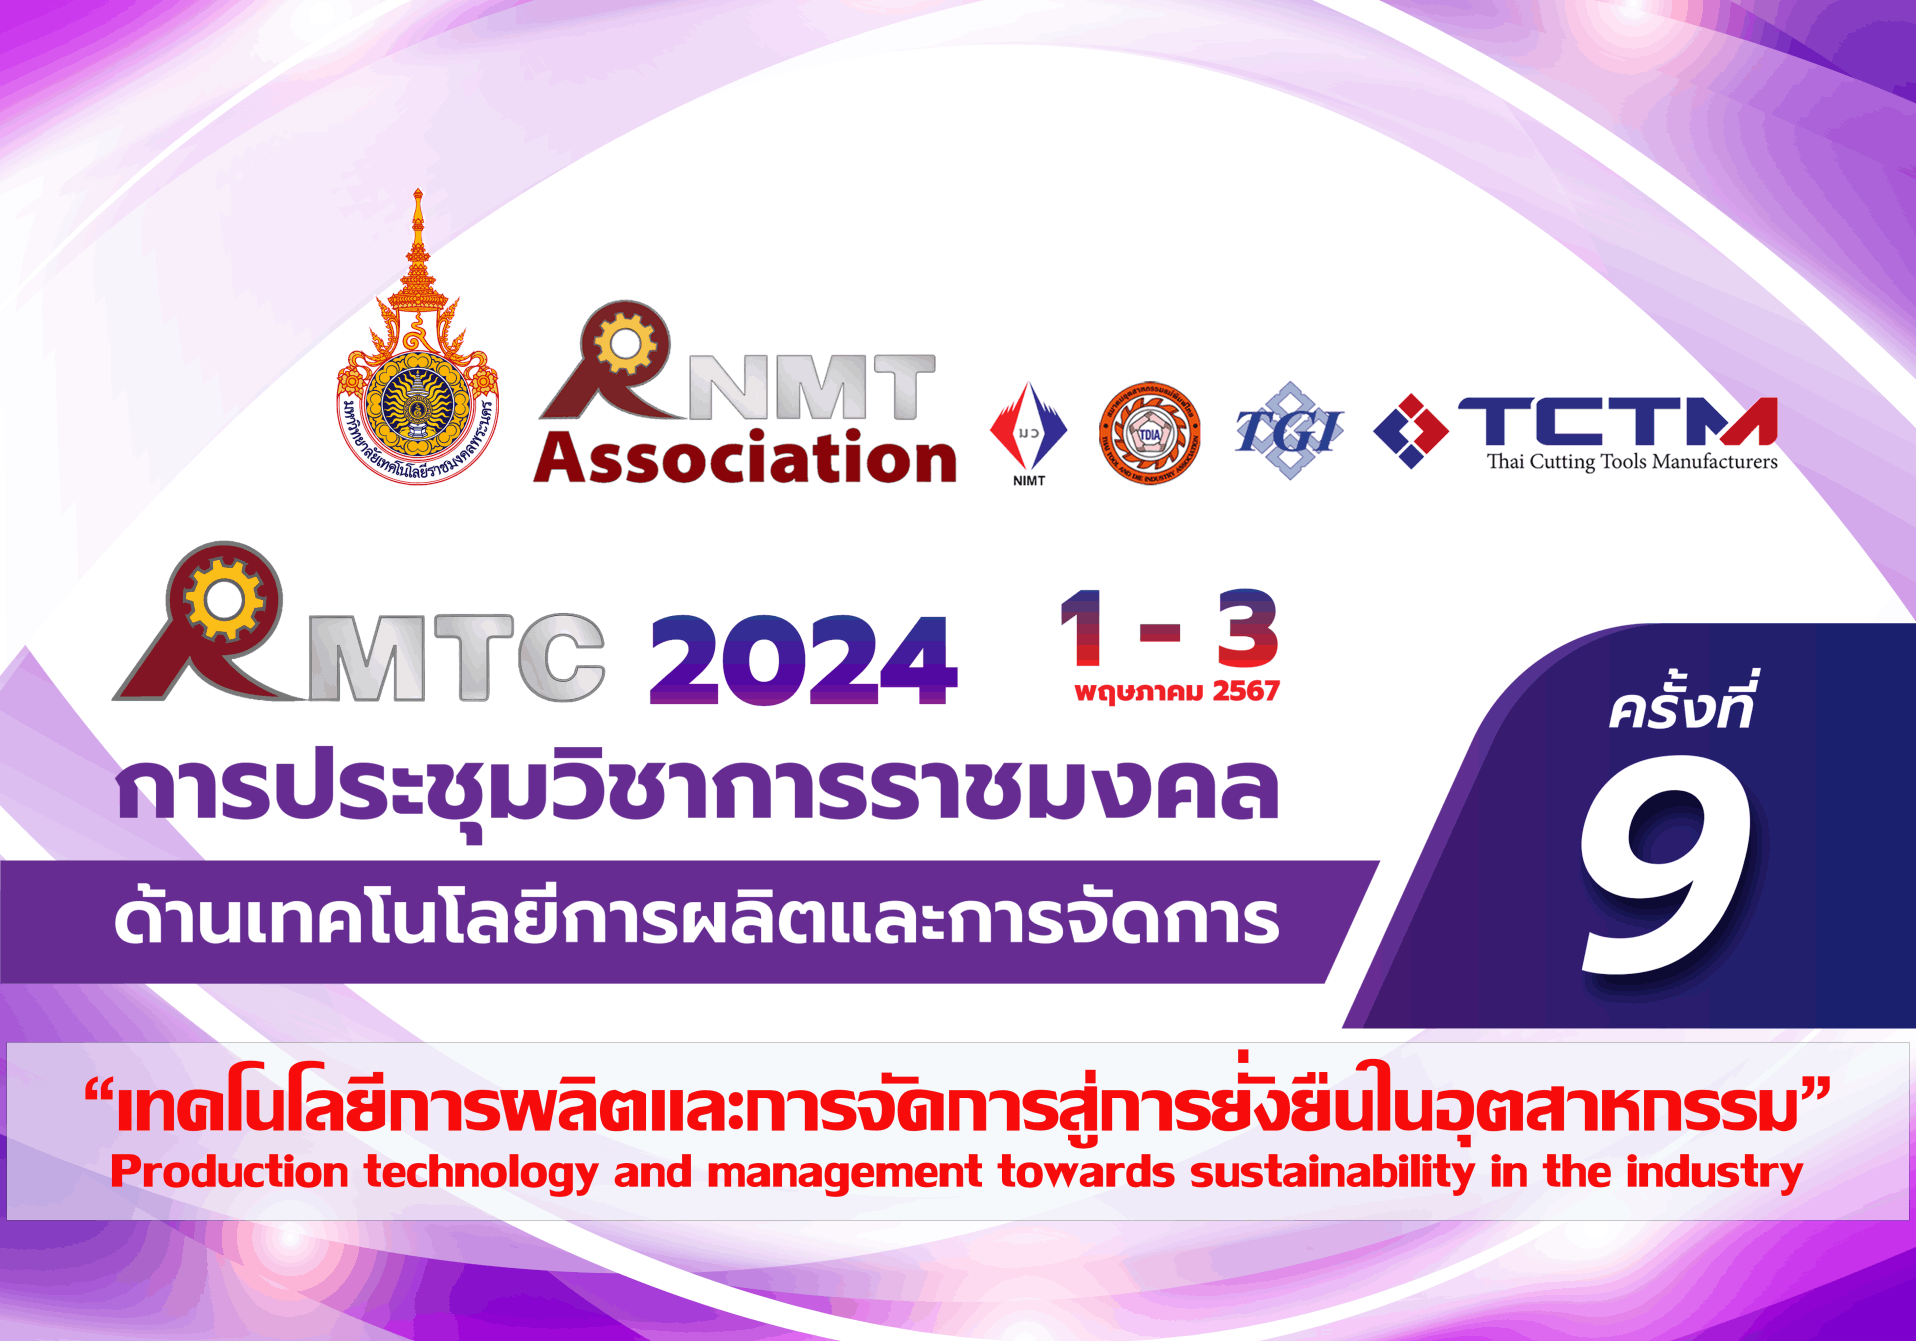 ประชาสัมพันธ์เชิญชวนส่งผลงานเข้าร่วมการประชุมวิชาการราชมงคลด้านเทคโนโลยีการผลิตและการจัดการครั้งที่ 9 (Rajamangala Manufacturing and Management Technology Conference : RMTC 2024)